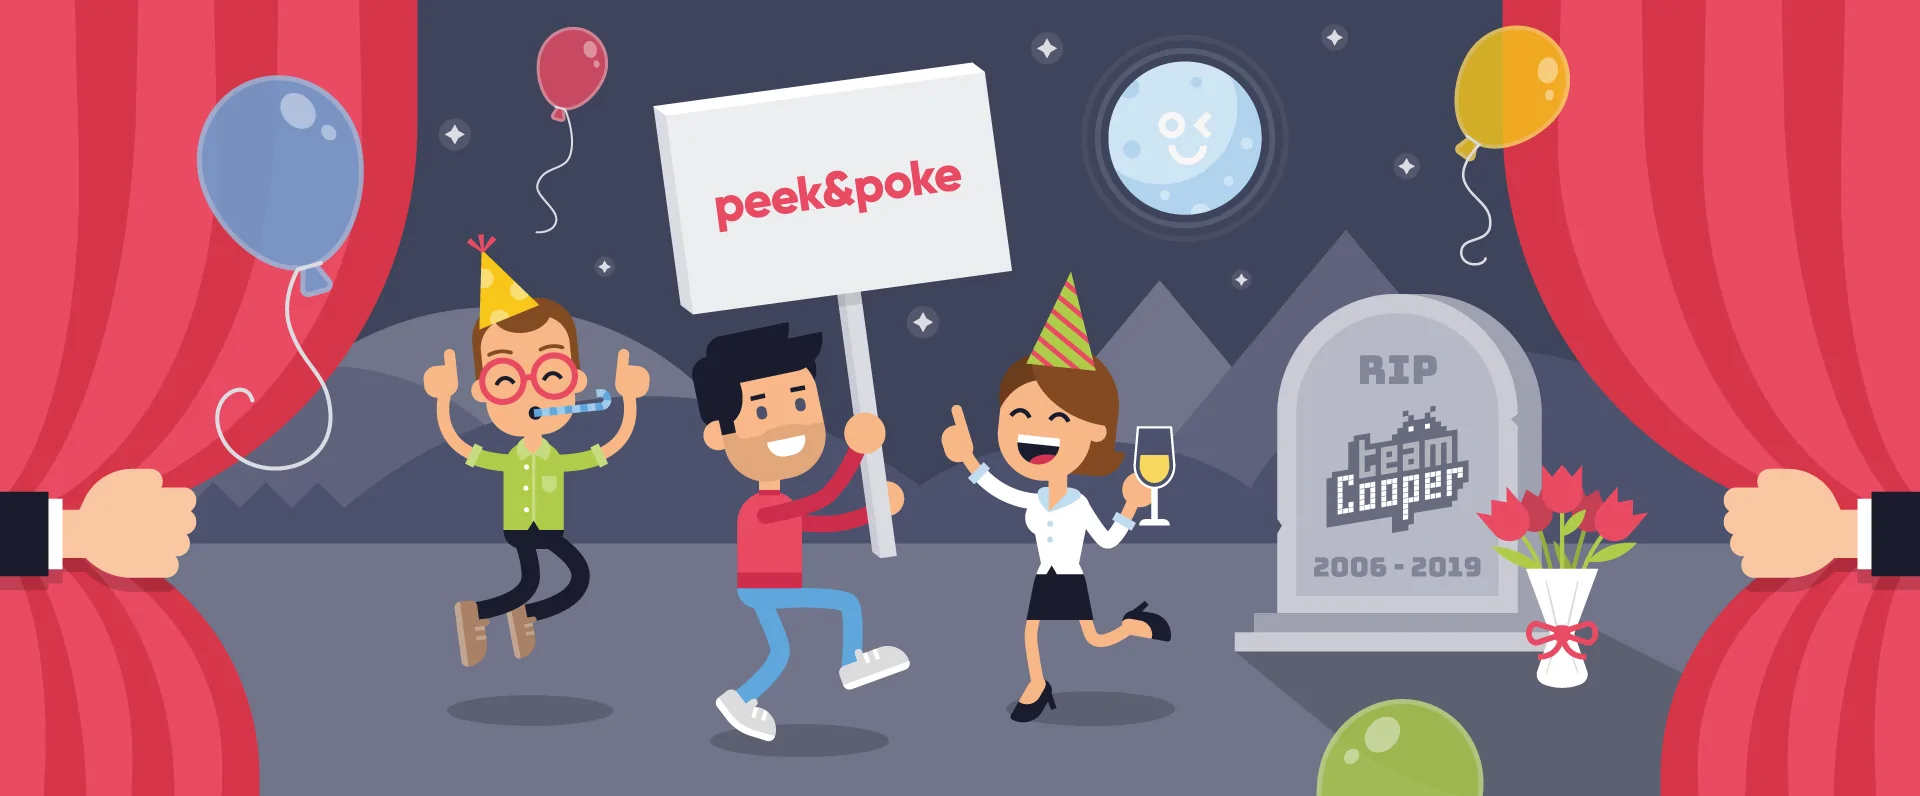 Peek & Poke Rebrand Blog Header